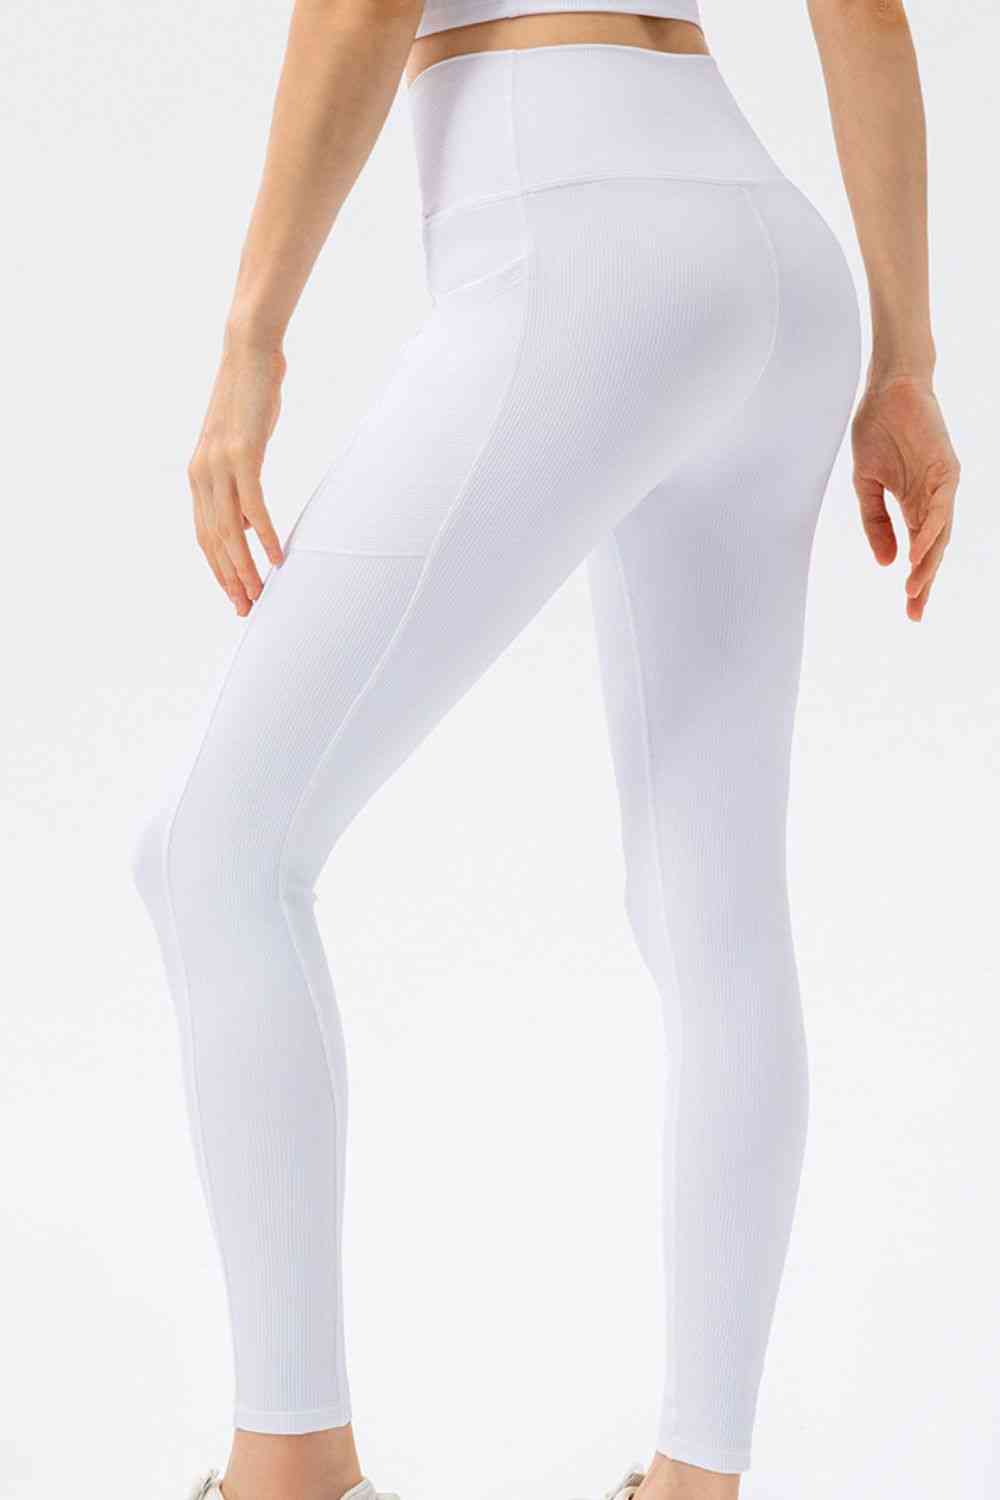 Pantalones deportivos largos ajustados con cintura en forma de V